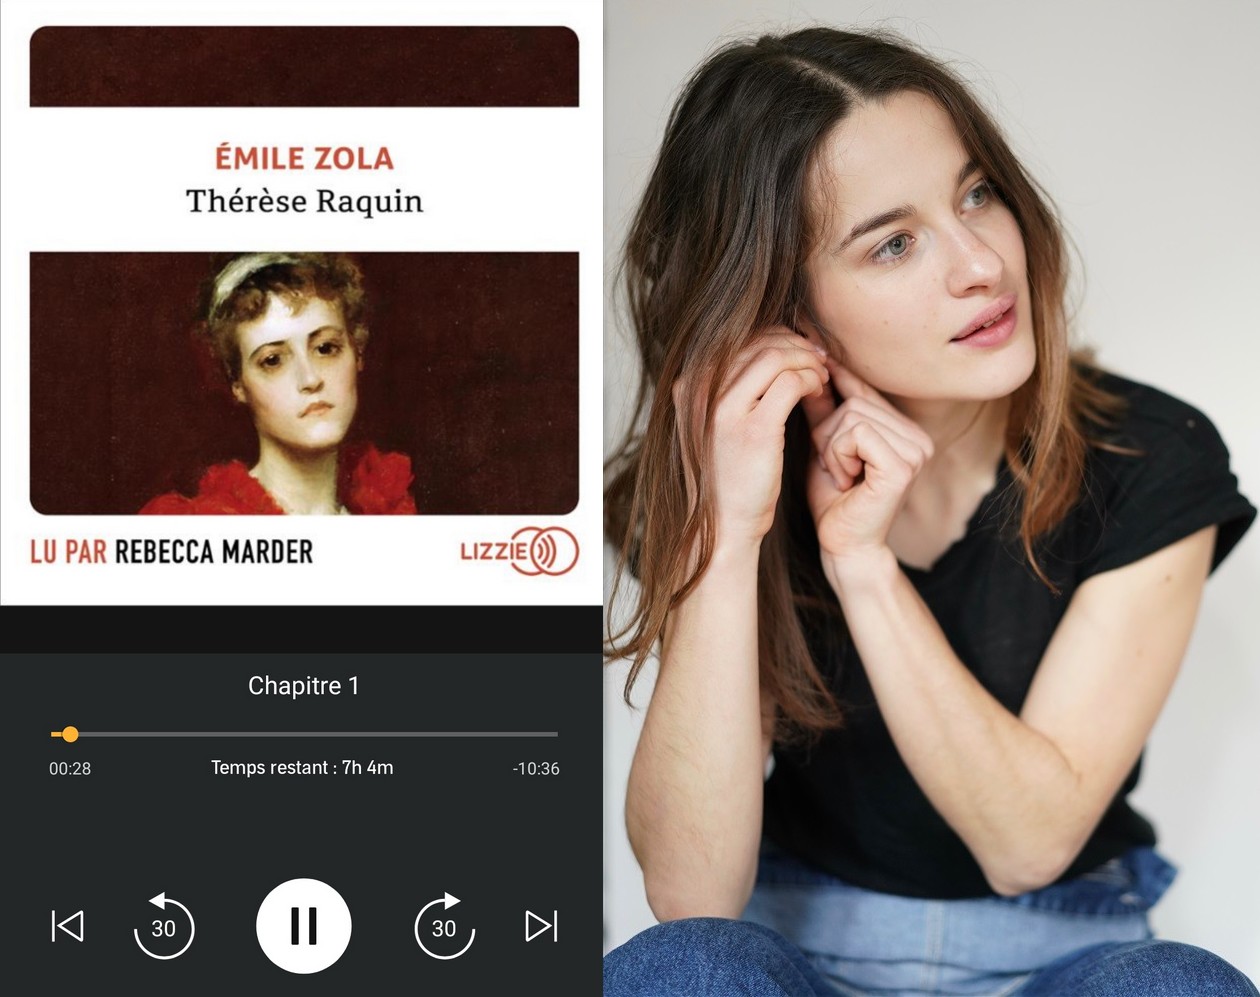 Audiobook / Livre audio : Émile Zola, Thérèse Raquin, lu par l'actrice Rebecca Marder